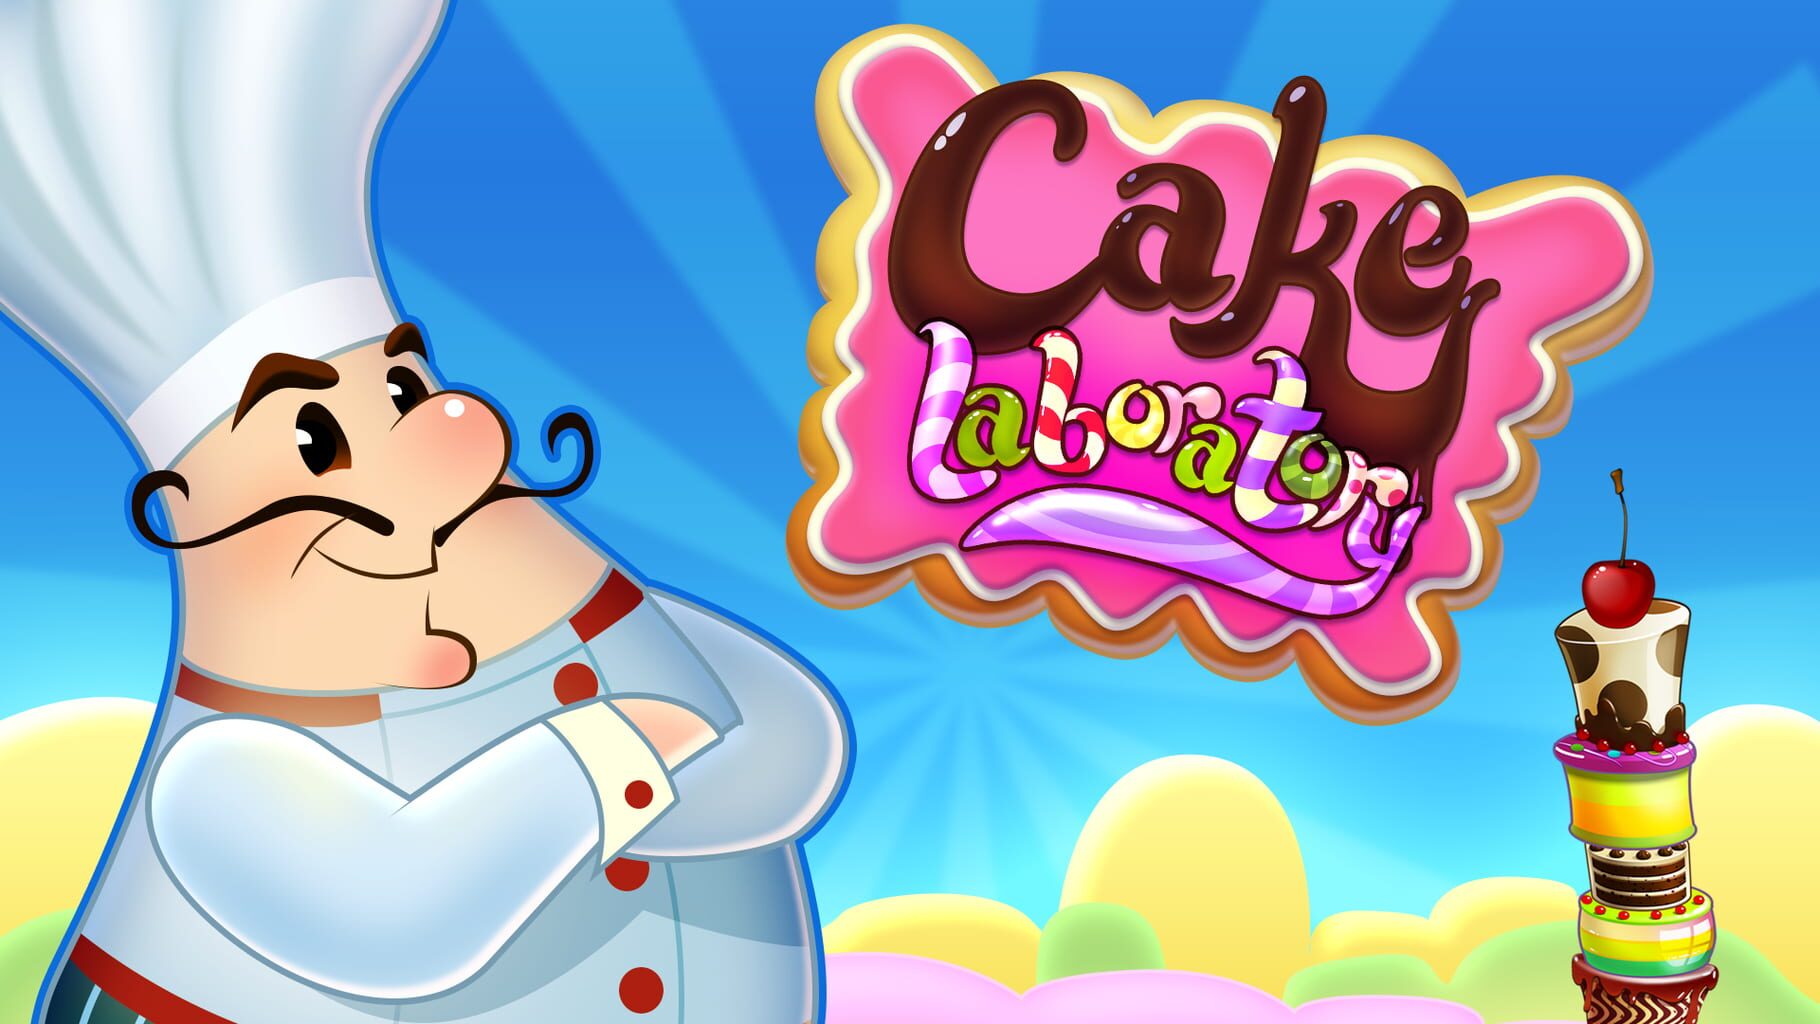 Cake Laboratory artwork